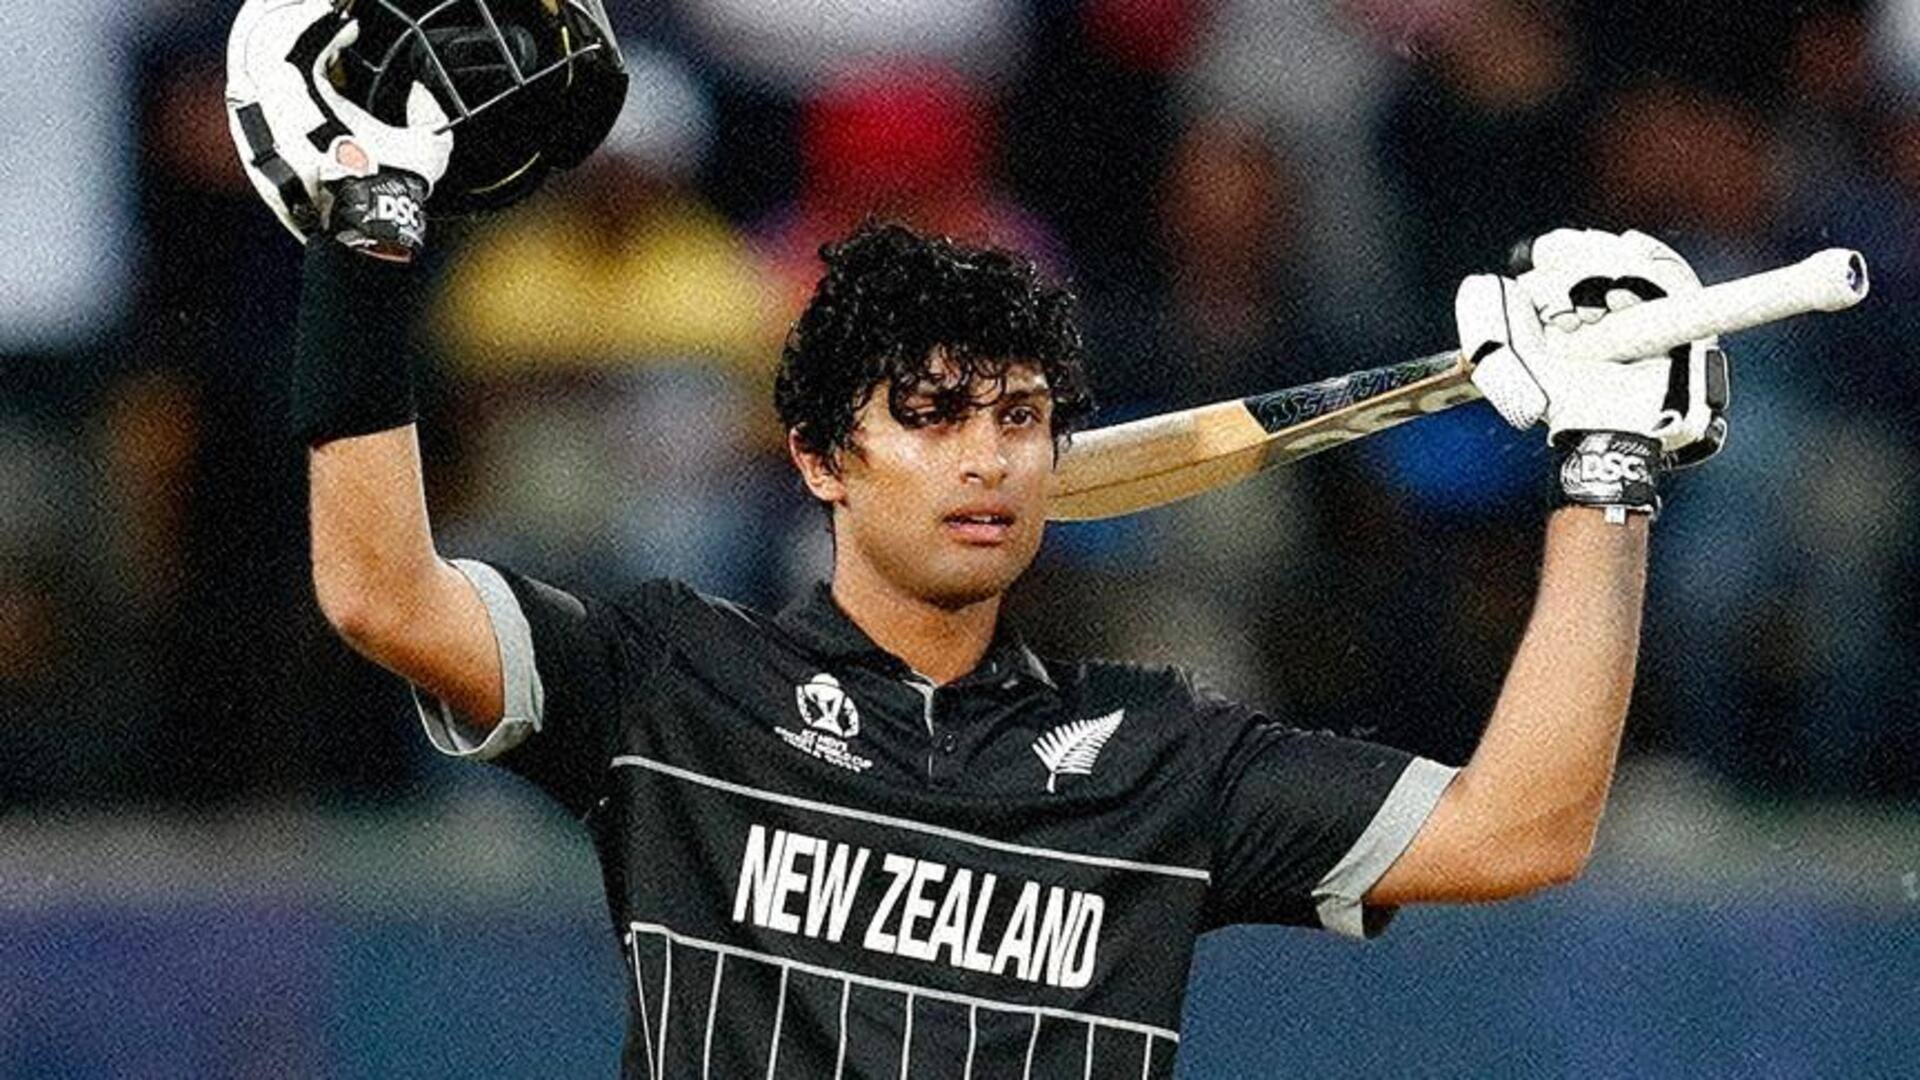 रचिन रविंद्र ने विश्व कप में जड़ा तीसरा शतक, ऐसा करने वाले न्यूजीलैंड के पहले बल्लेबाज 